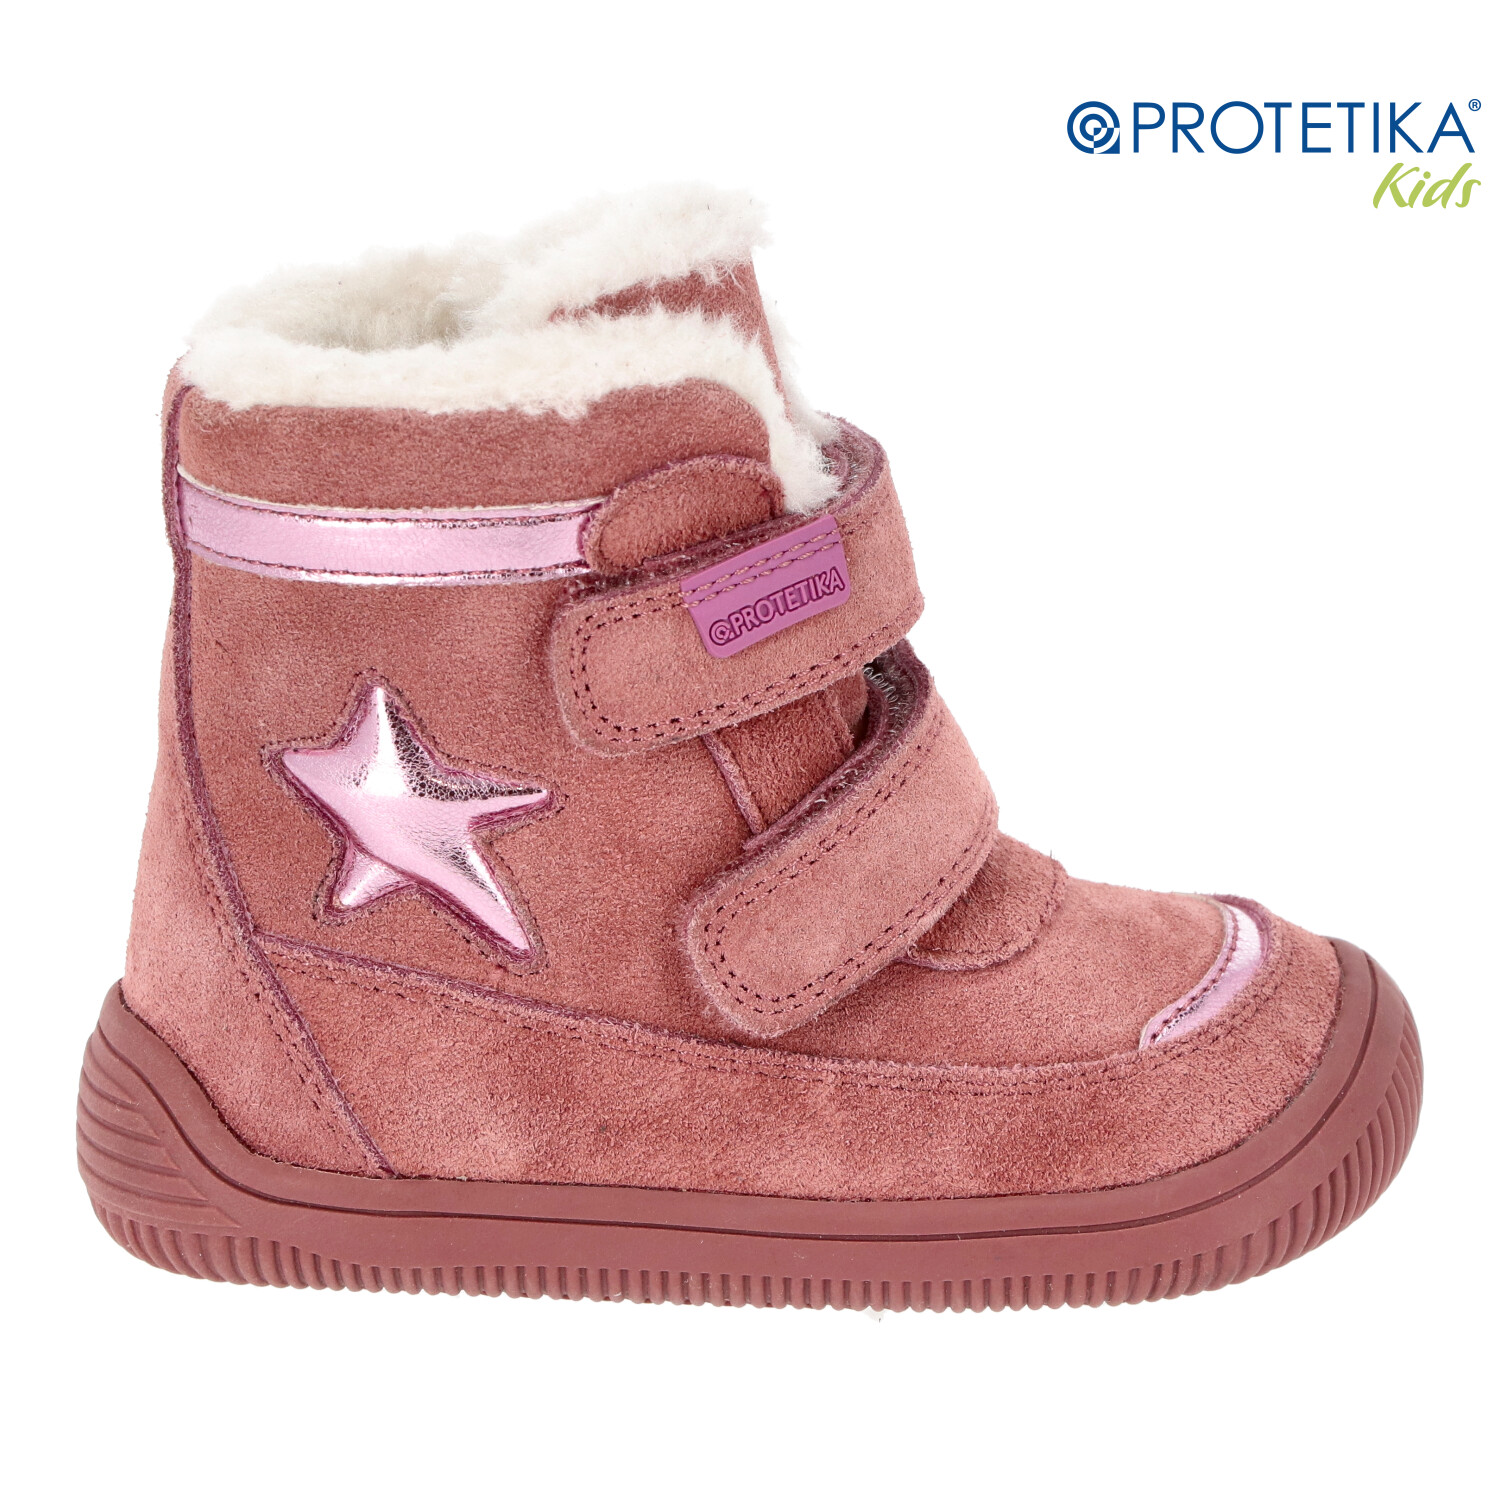 Protetika - zimné barefootové topánky LINET pink - zateplené kožušinkou